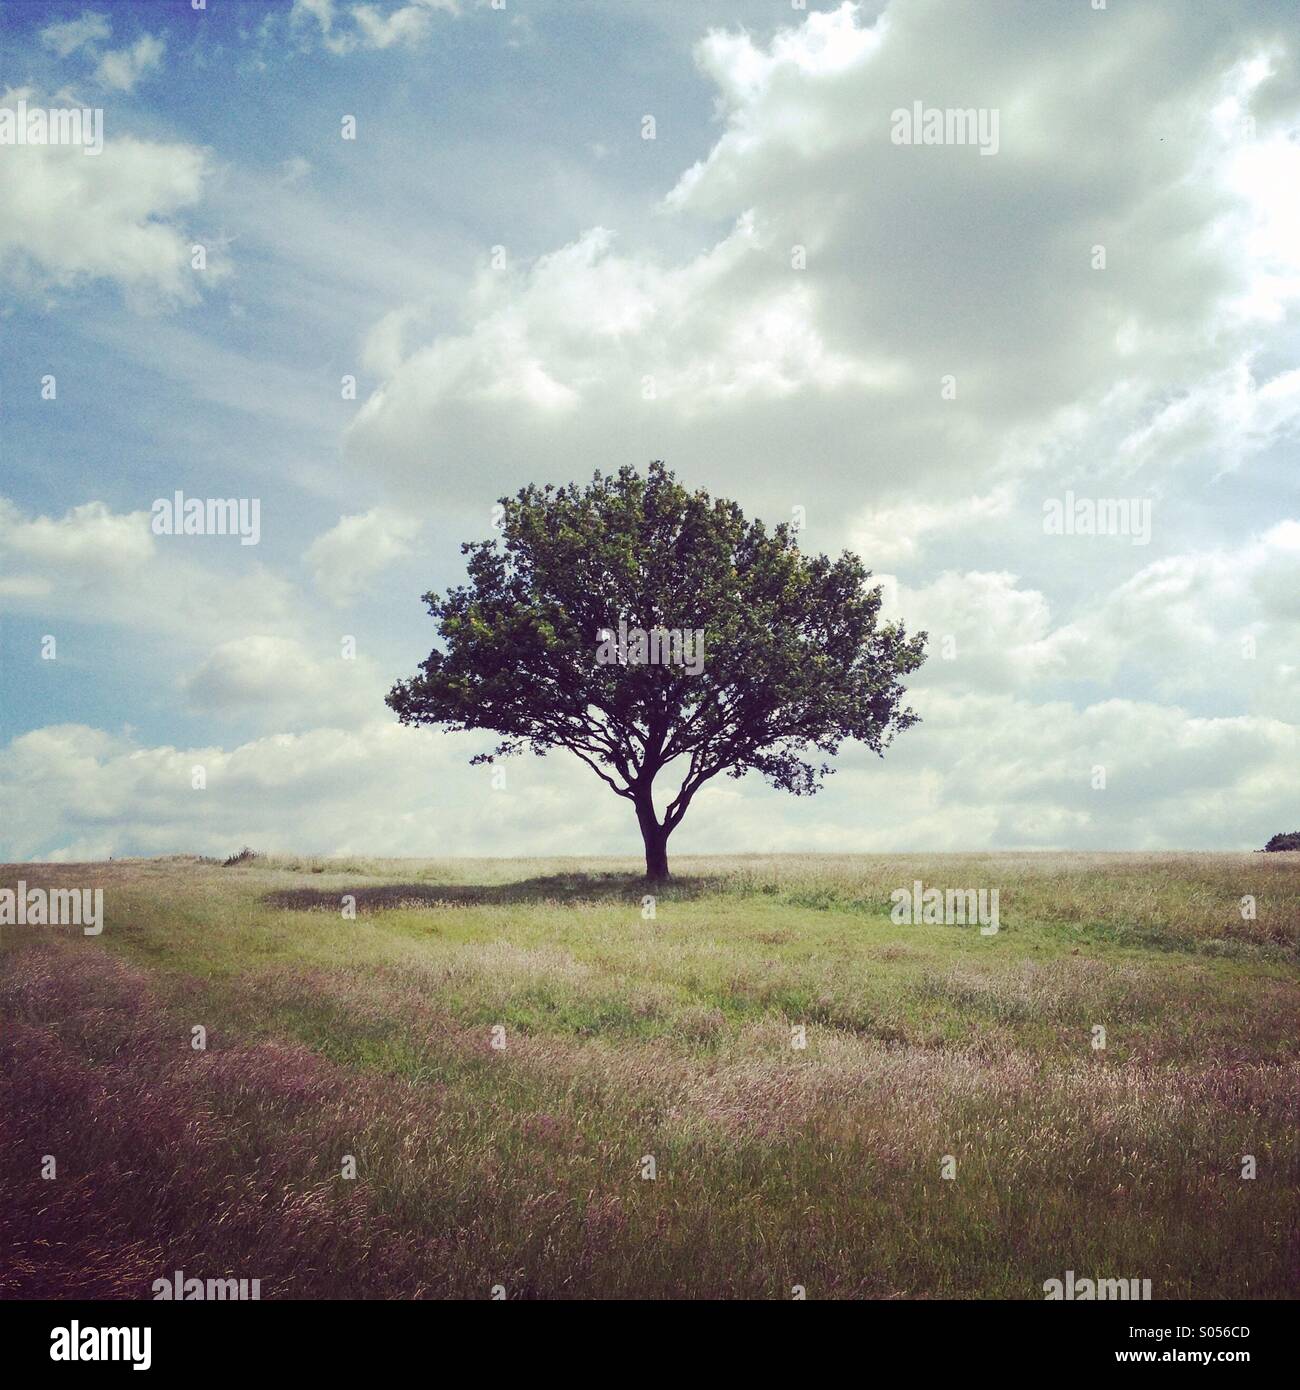 Single tree in field Stock Photo